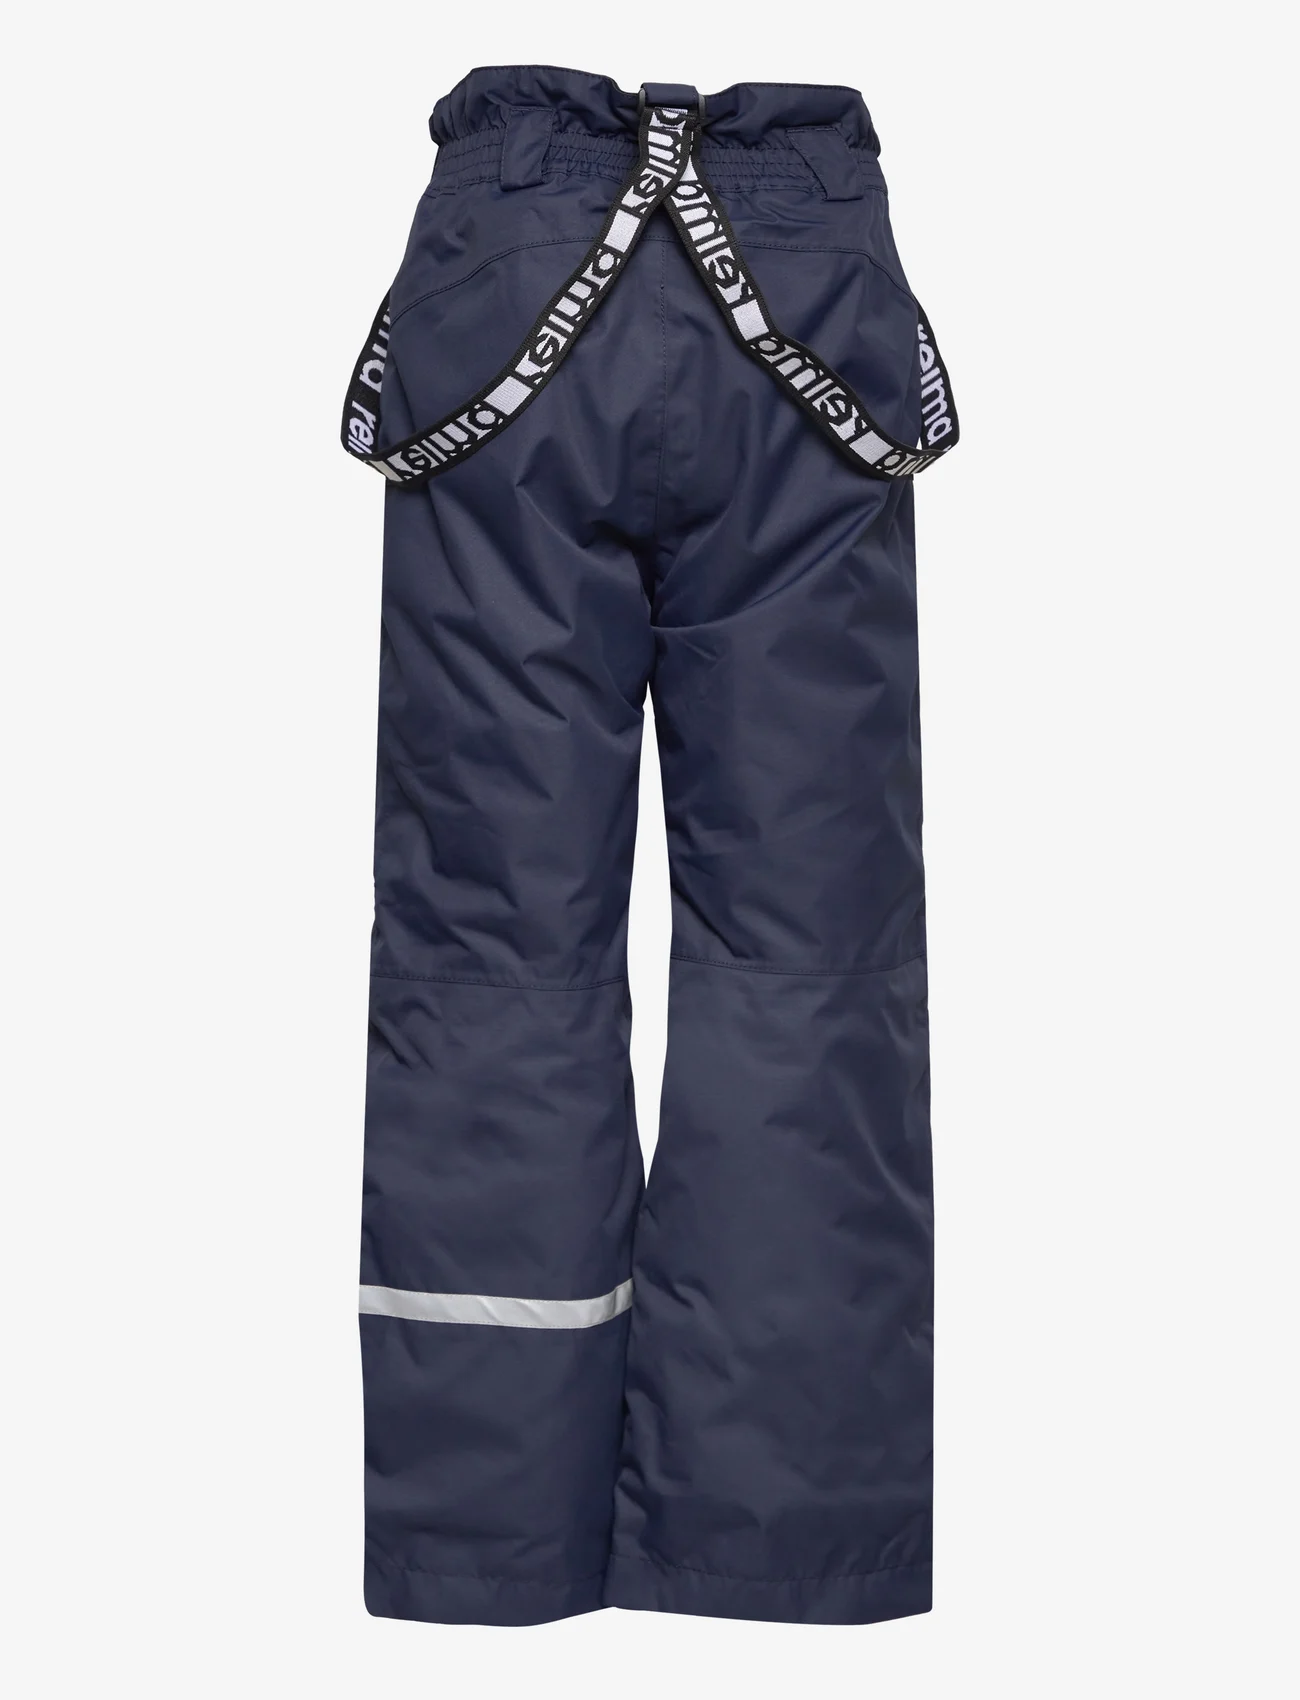 Reima - Winter pants, Tuokio - outdoorhosen - navy - 1